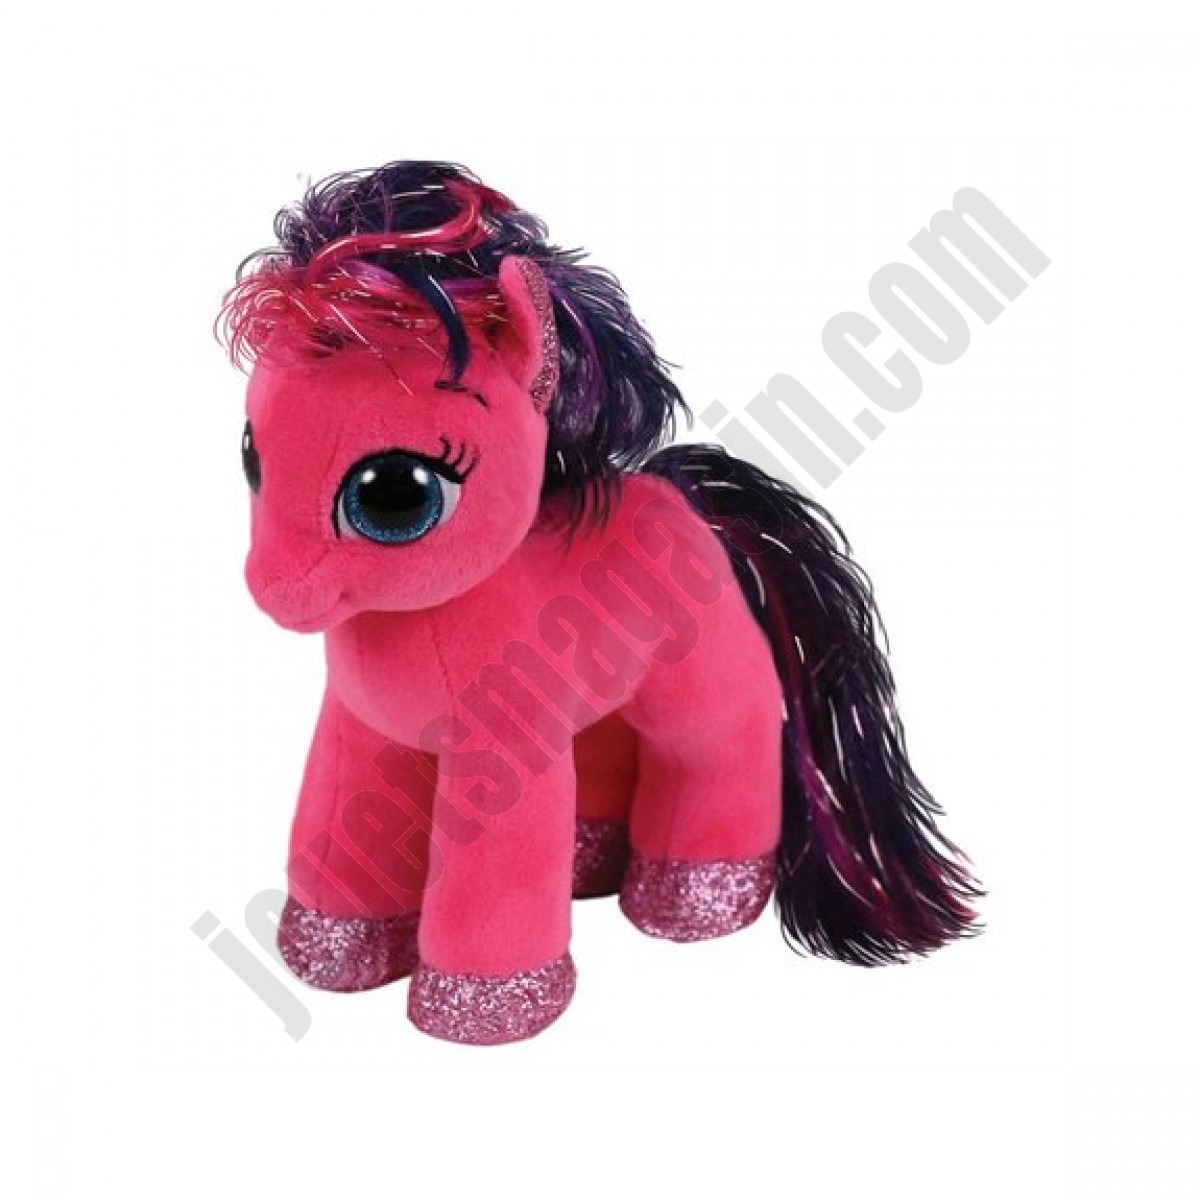 Beanie boo's - Ruby le poney rose 15 cm ◆◆◆ Nouveau - Beanie boo's - Ruby le poney rose 15 cm ◆◆◆ Nouveau